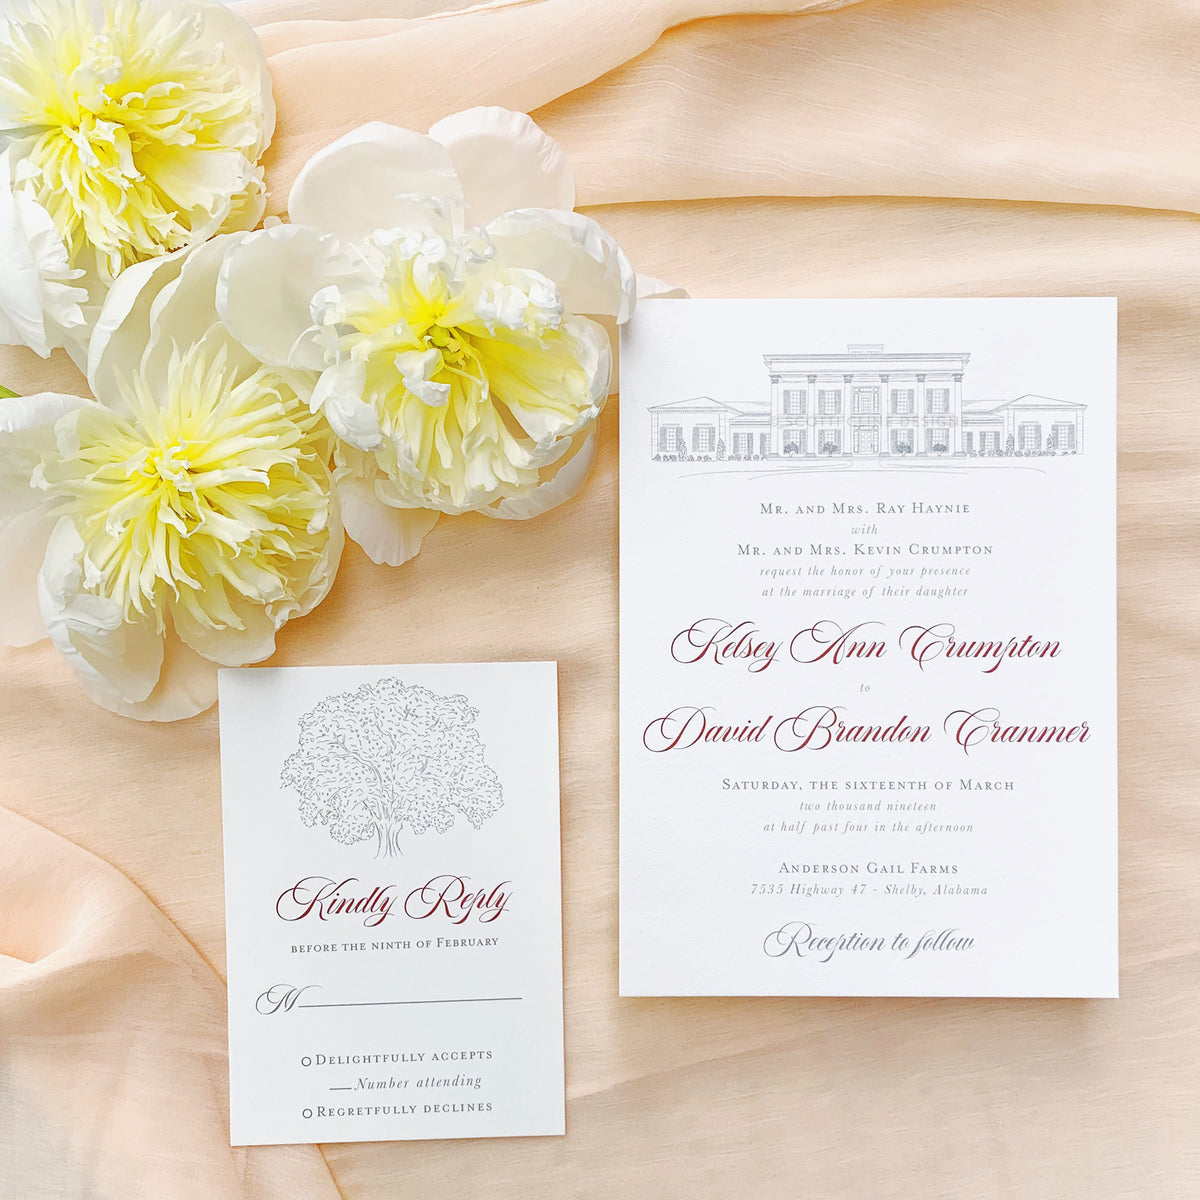 Anderson Gail Farms Wedding Invitation by Scotti Cline Designs